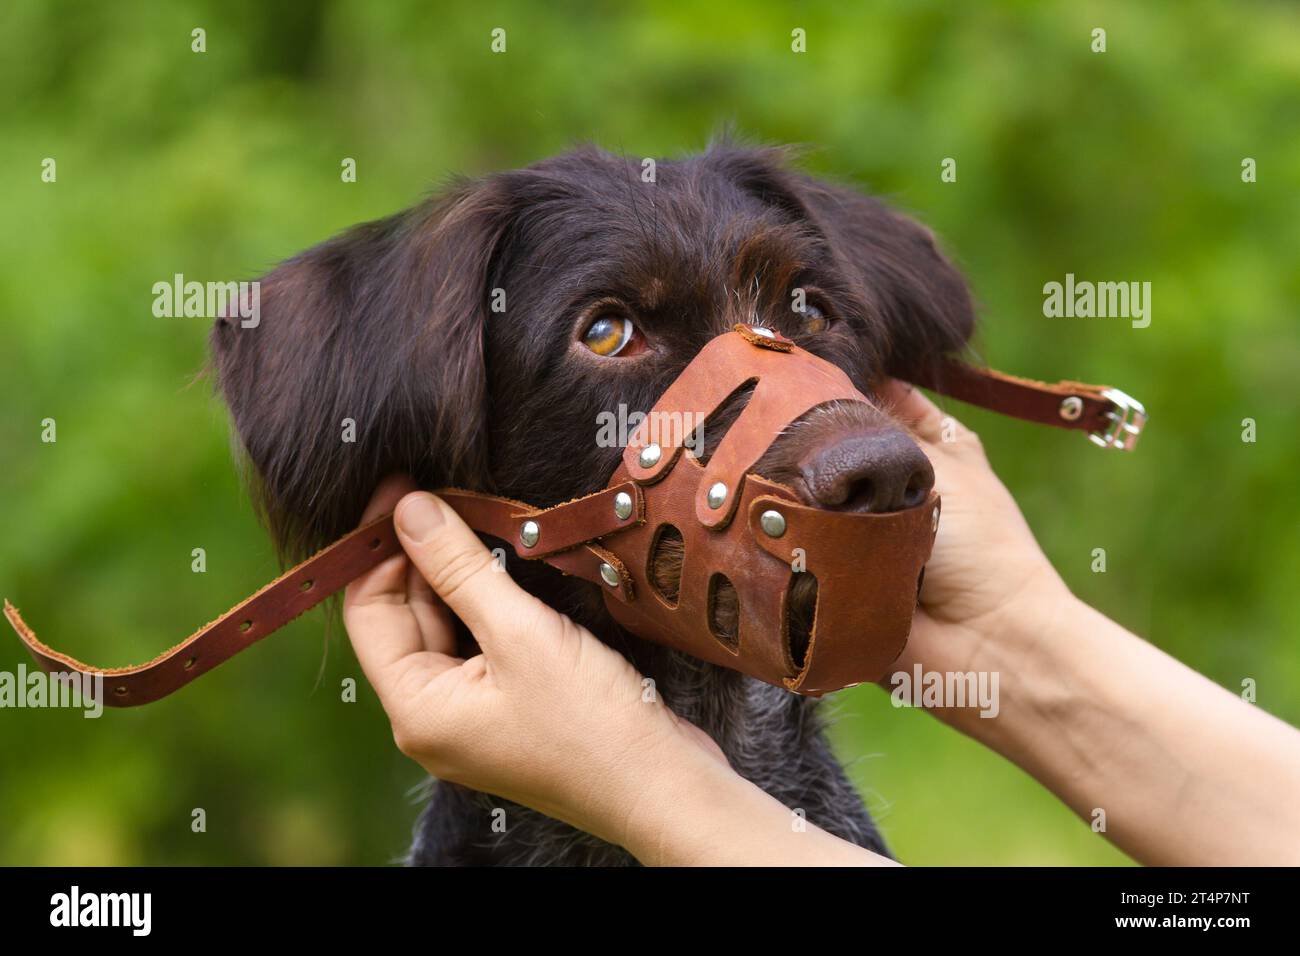 Die Hände des Besitzers haben einen ledernen Maulkorb auf einen frechen jungen Hund gelegt Stockfoto